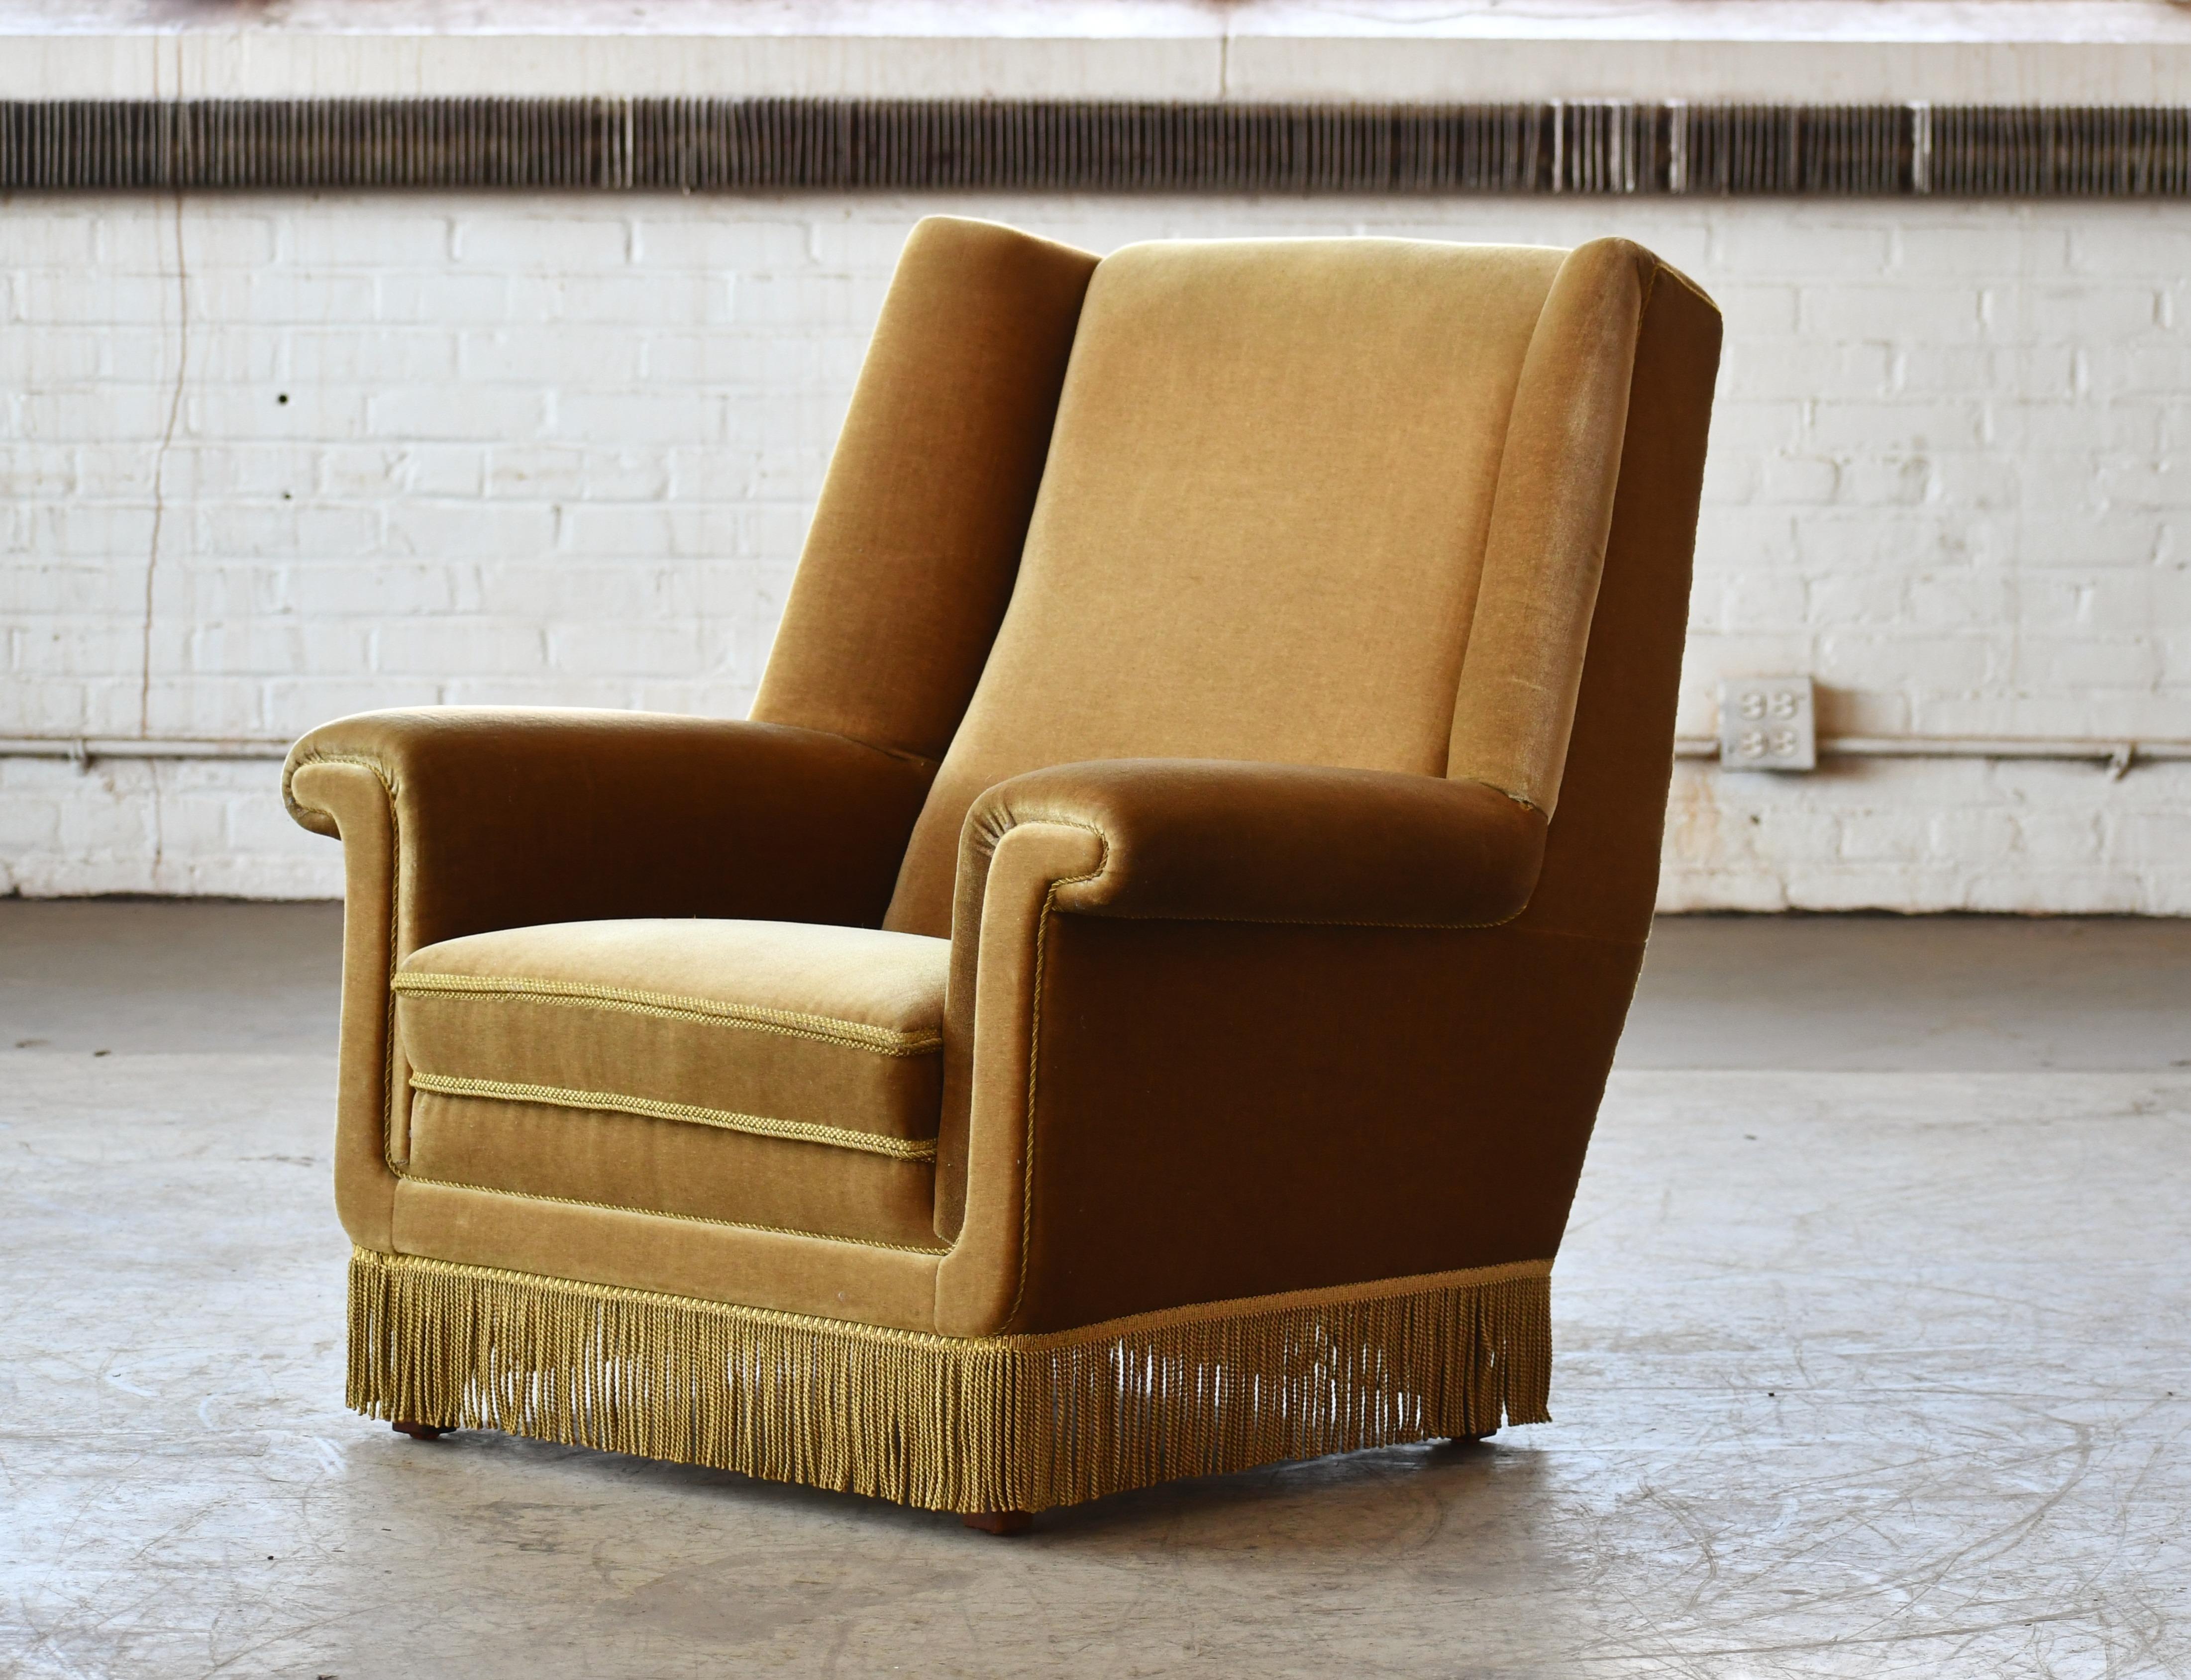 Schöner Sessel mit hoher Rückenlehne, entworfen von G. Thams für die Vejen Polstermobelfabrik um 1968. Der Stuhl wurde über den Einzelhändler Domus Danish verkauft und war 1968 in dessen Katalog zu sehen. Ein sehr eleganter Stuhl mit einer starken